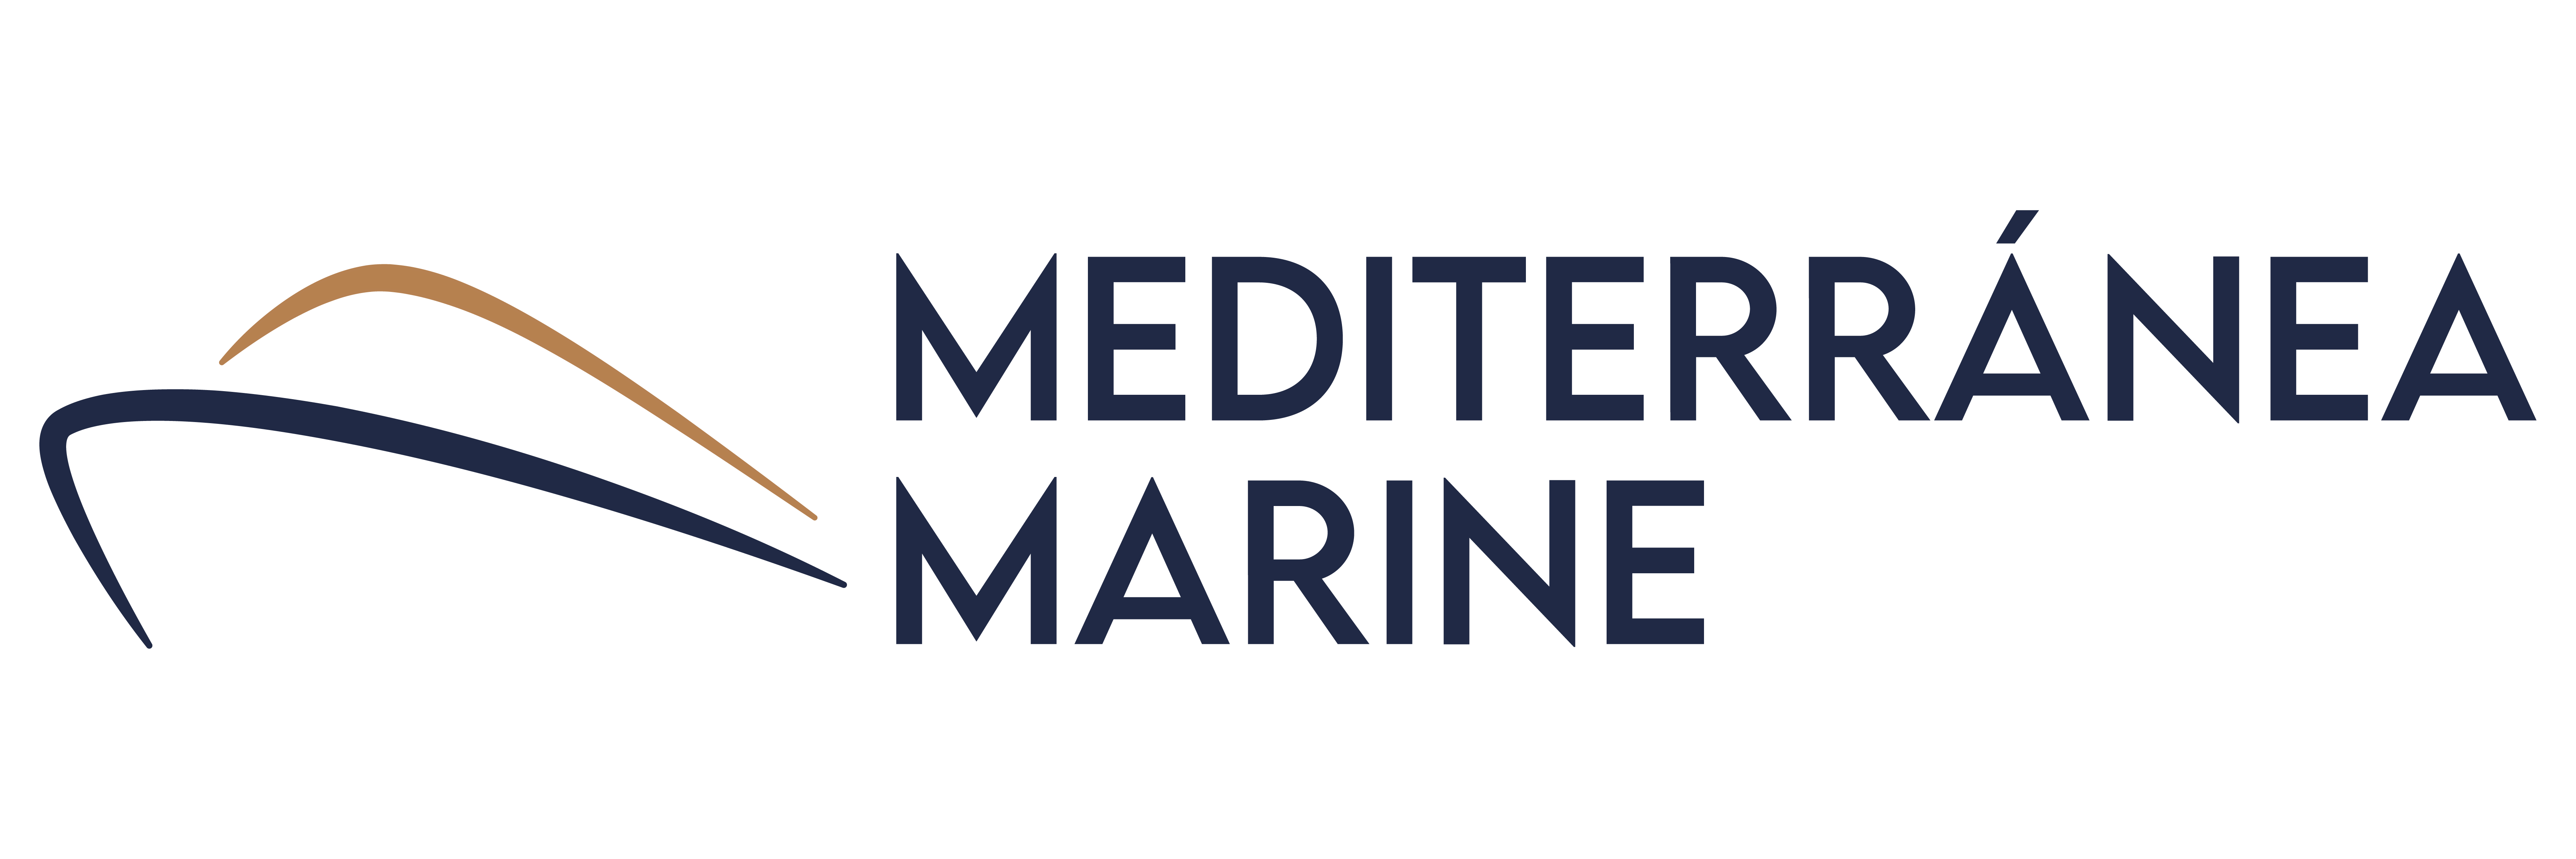 Mediterranea Marine Yatch Management